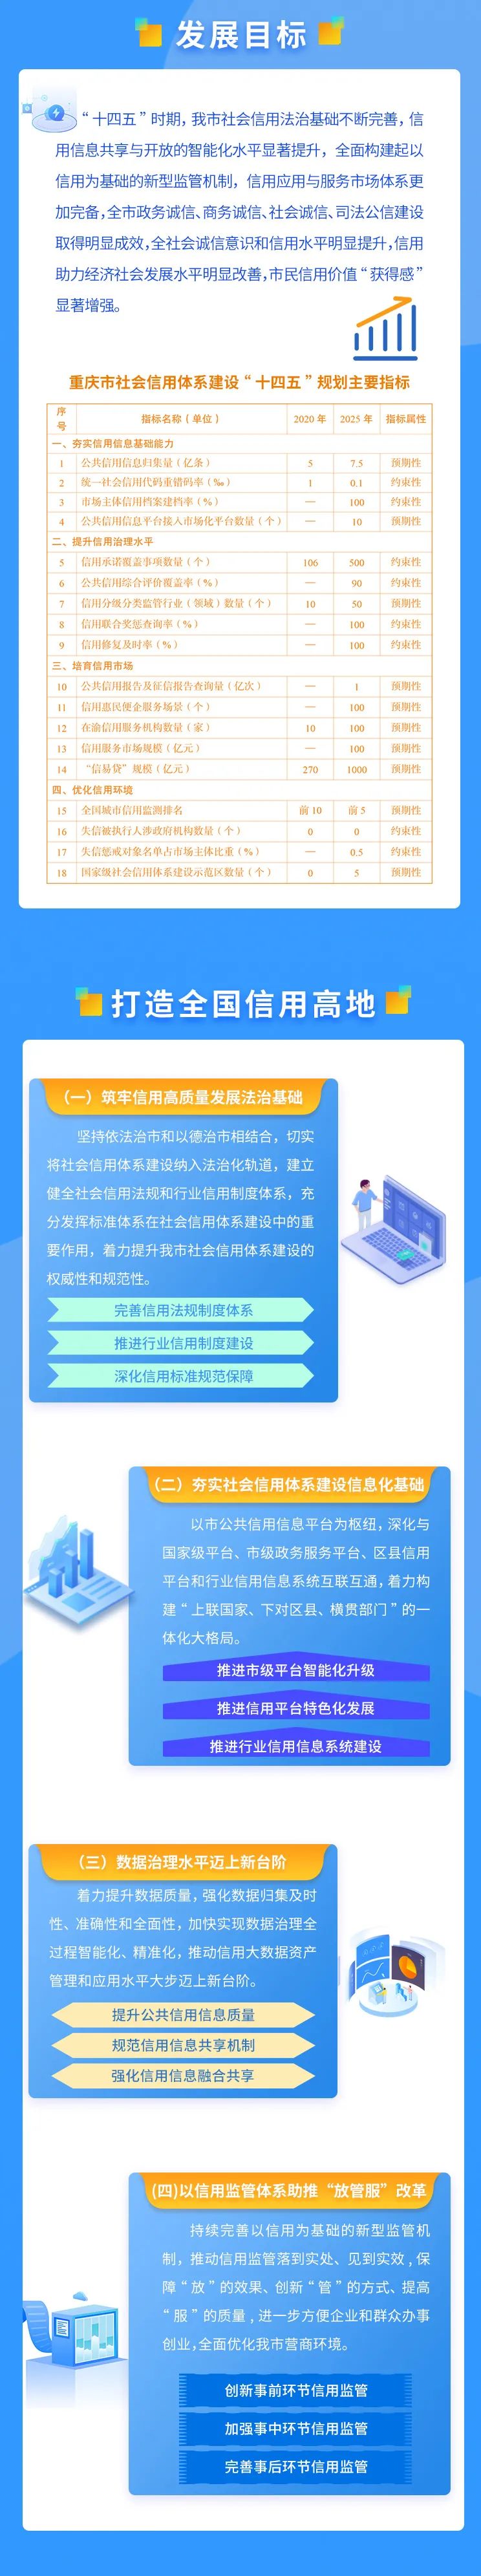 重庆市发展改革委 供图